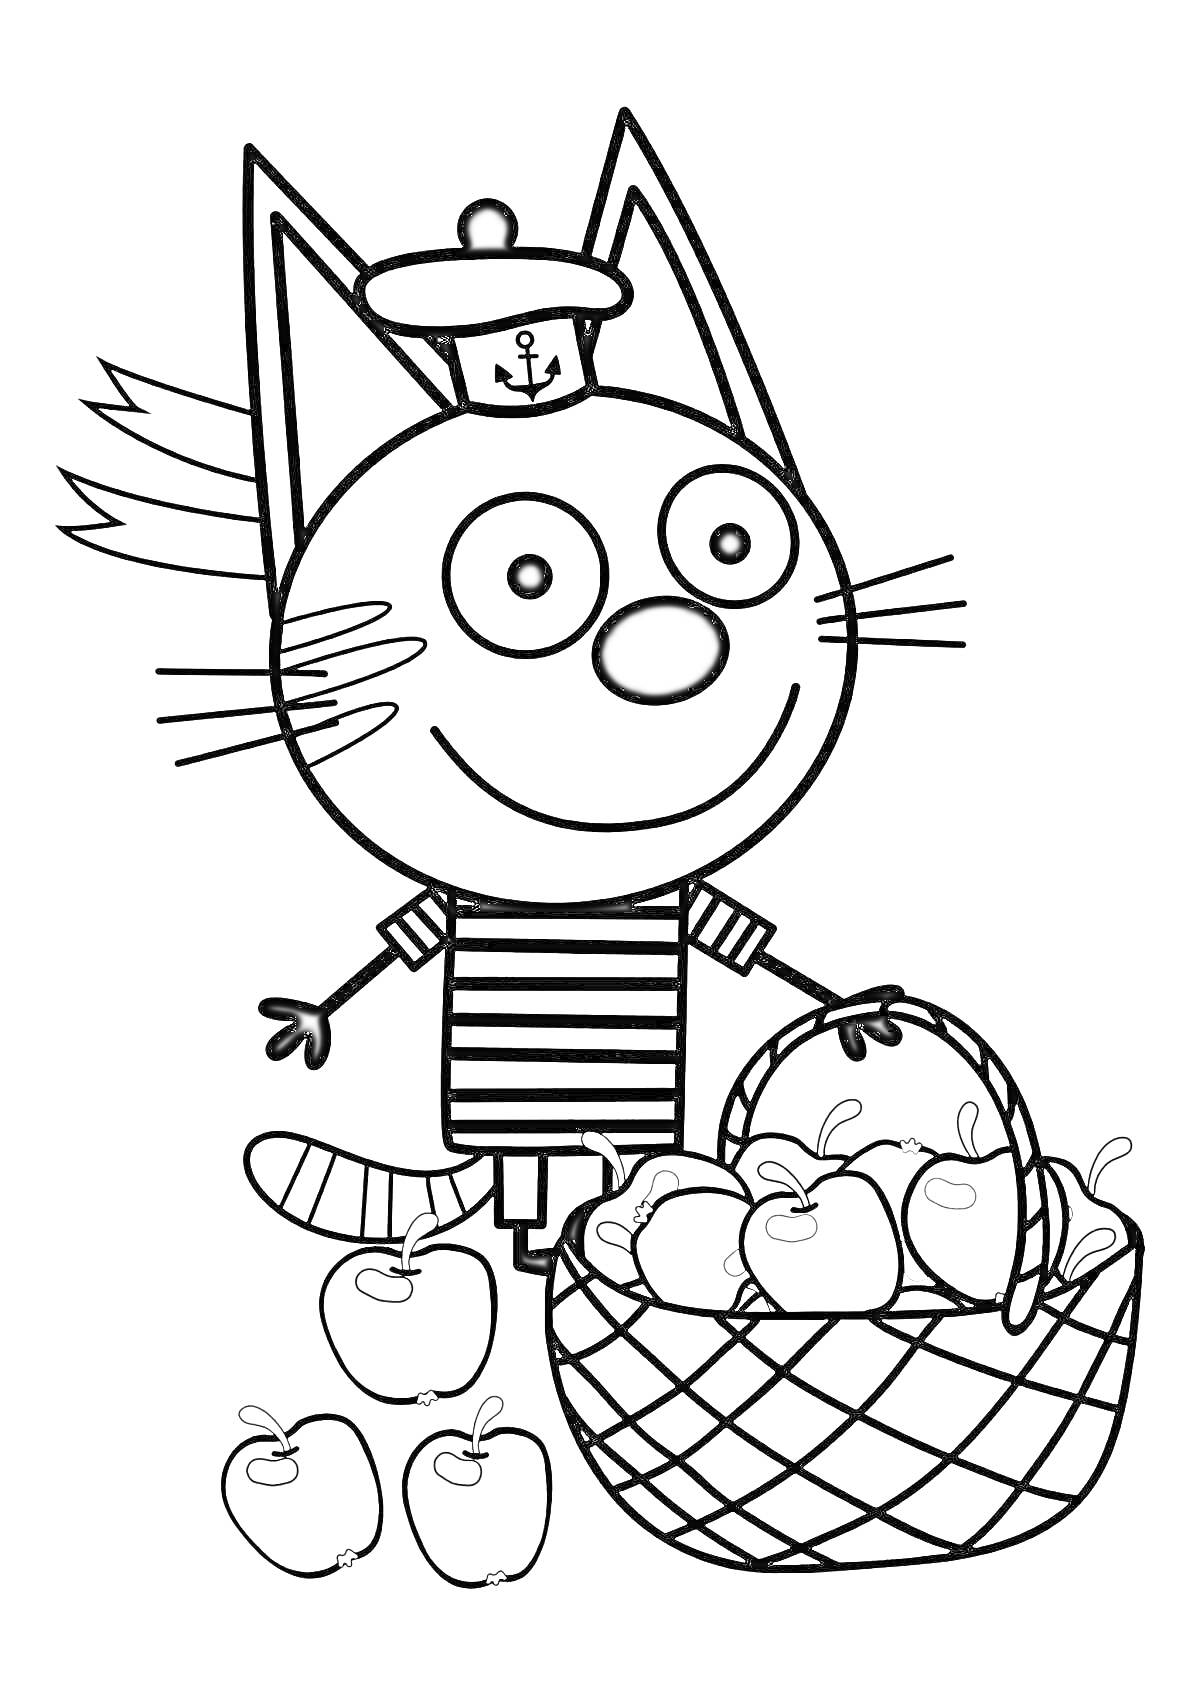 Раскраска Котенок в тельняшке с корзиной яблок